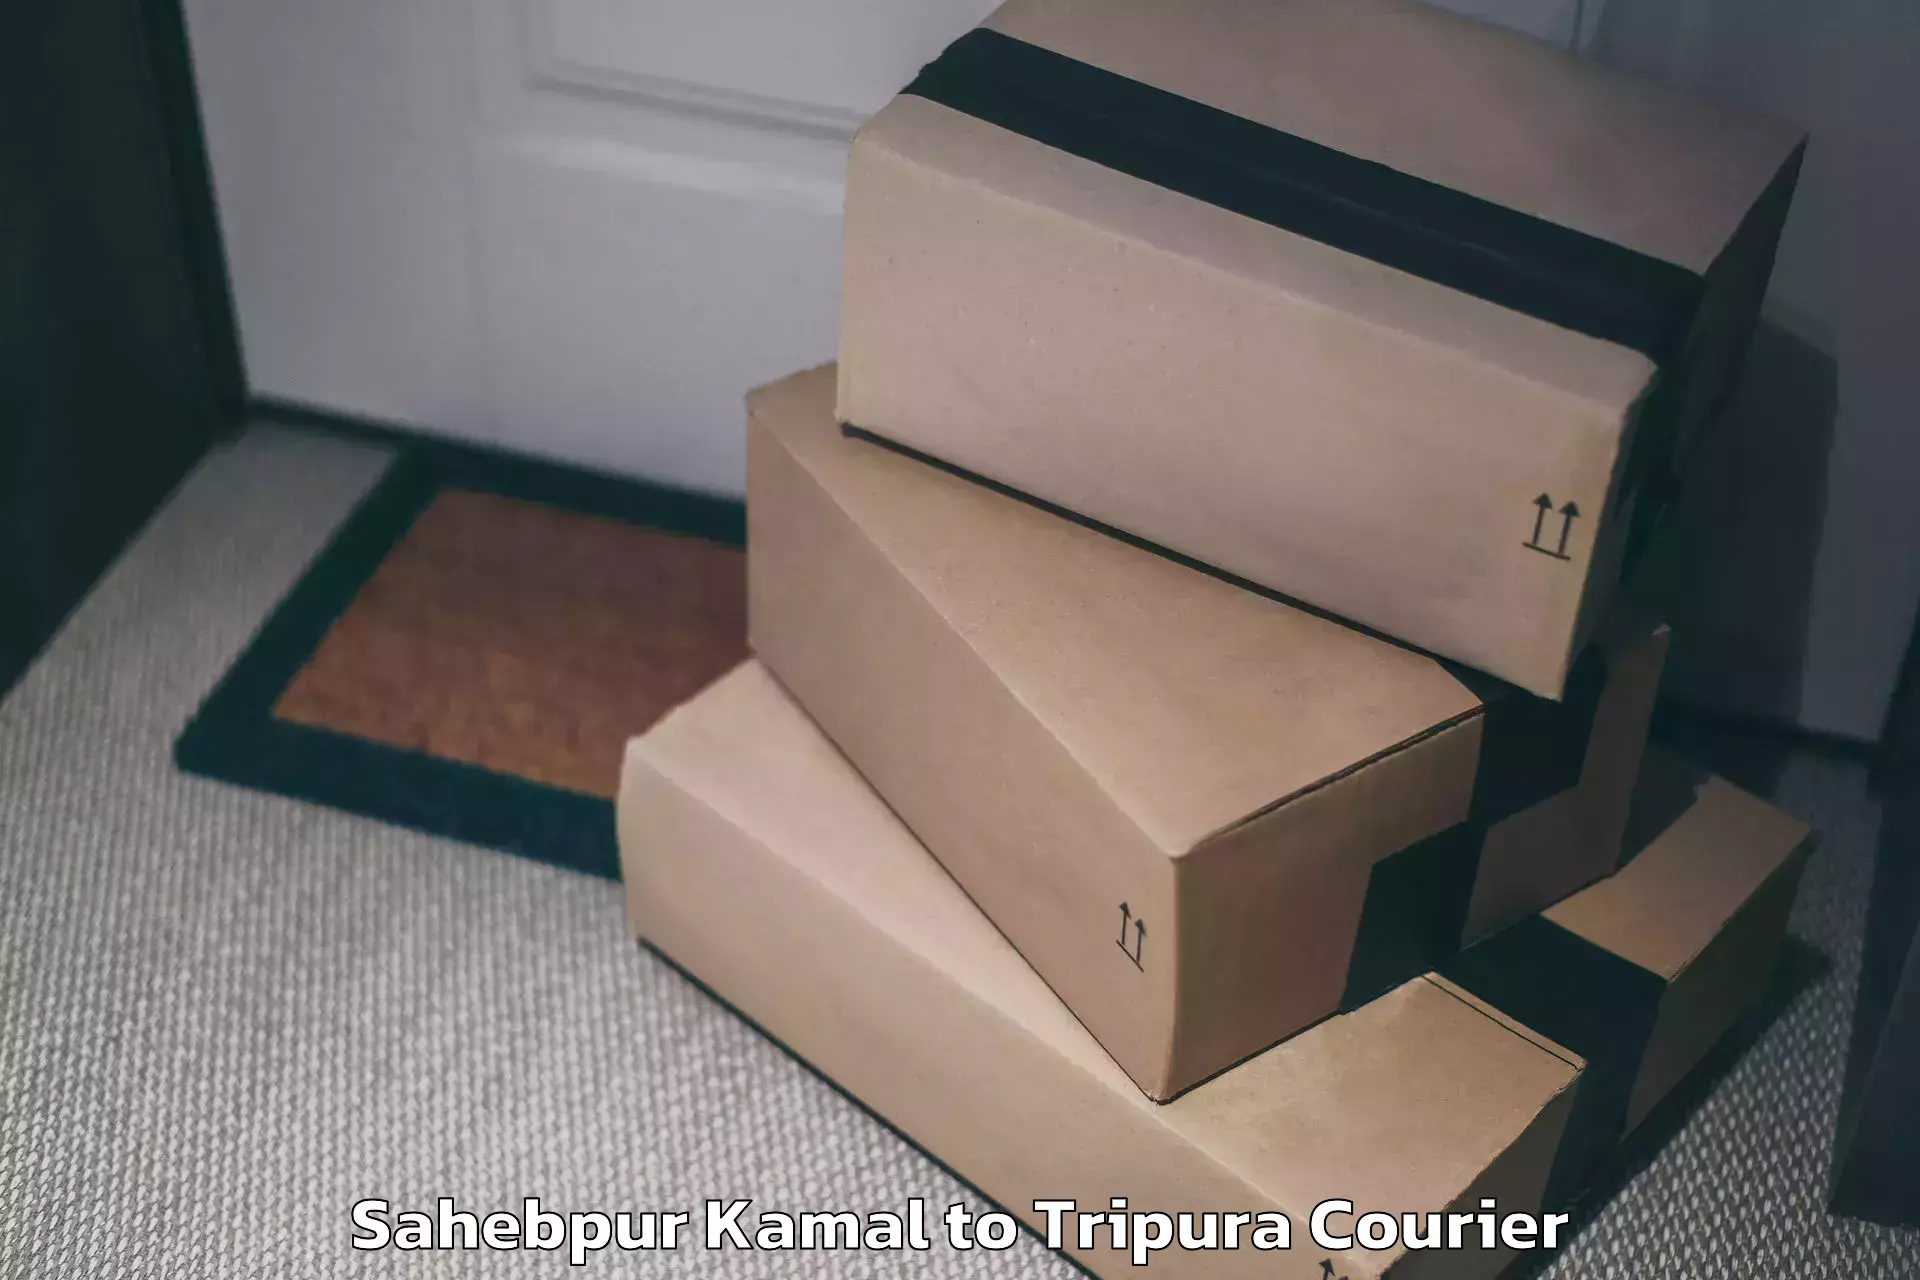 Luggage shipment processing Sahebpur Kamal to Kailashahar